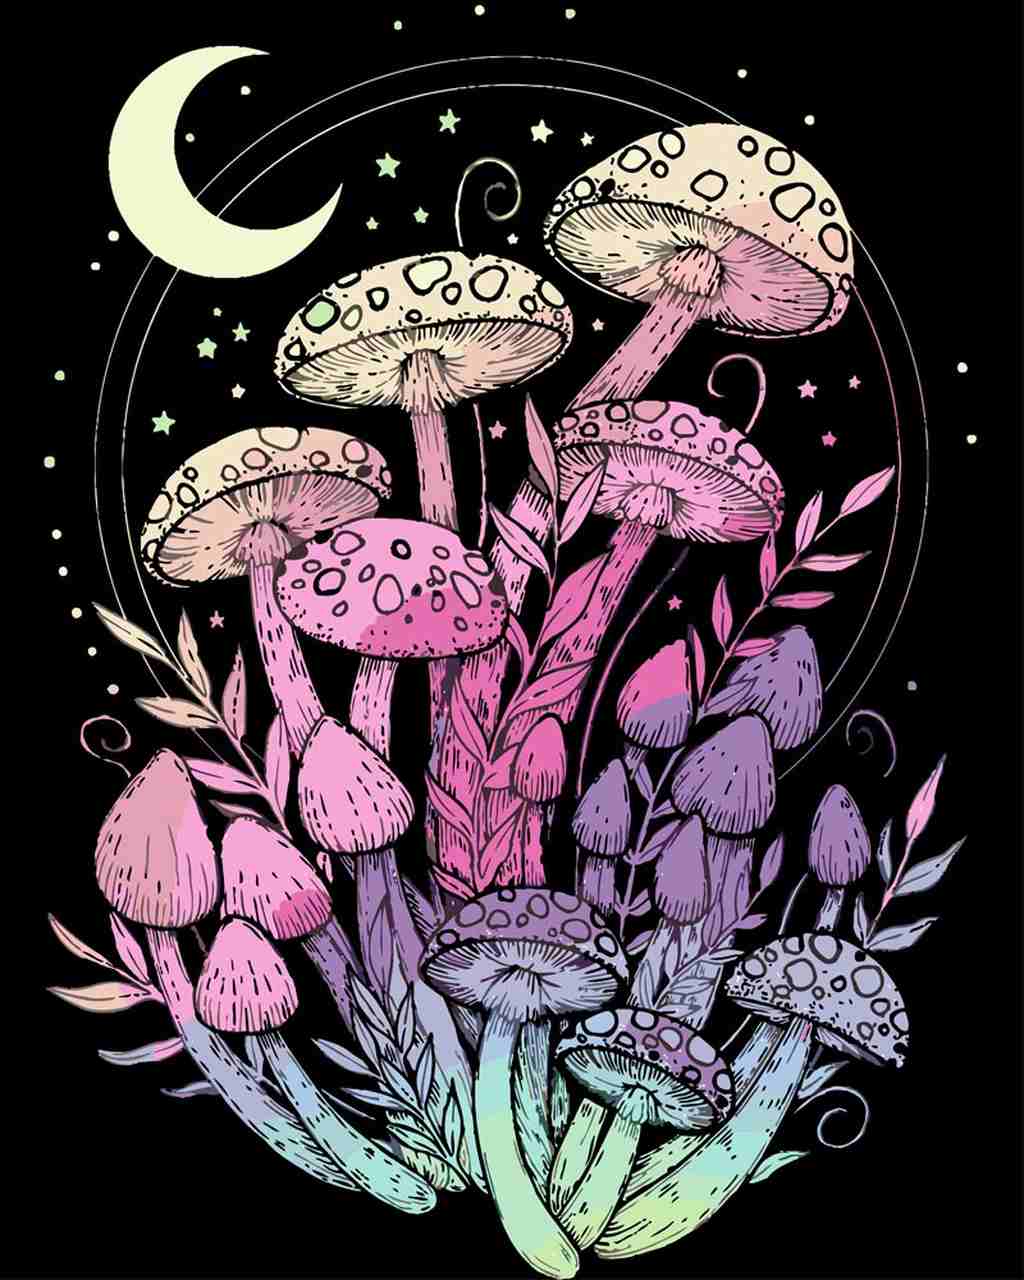 Malen nach Zahlen   Pilze bei Nacht   by Pixie Cold